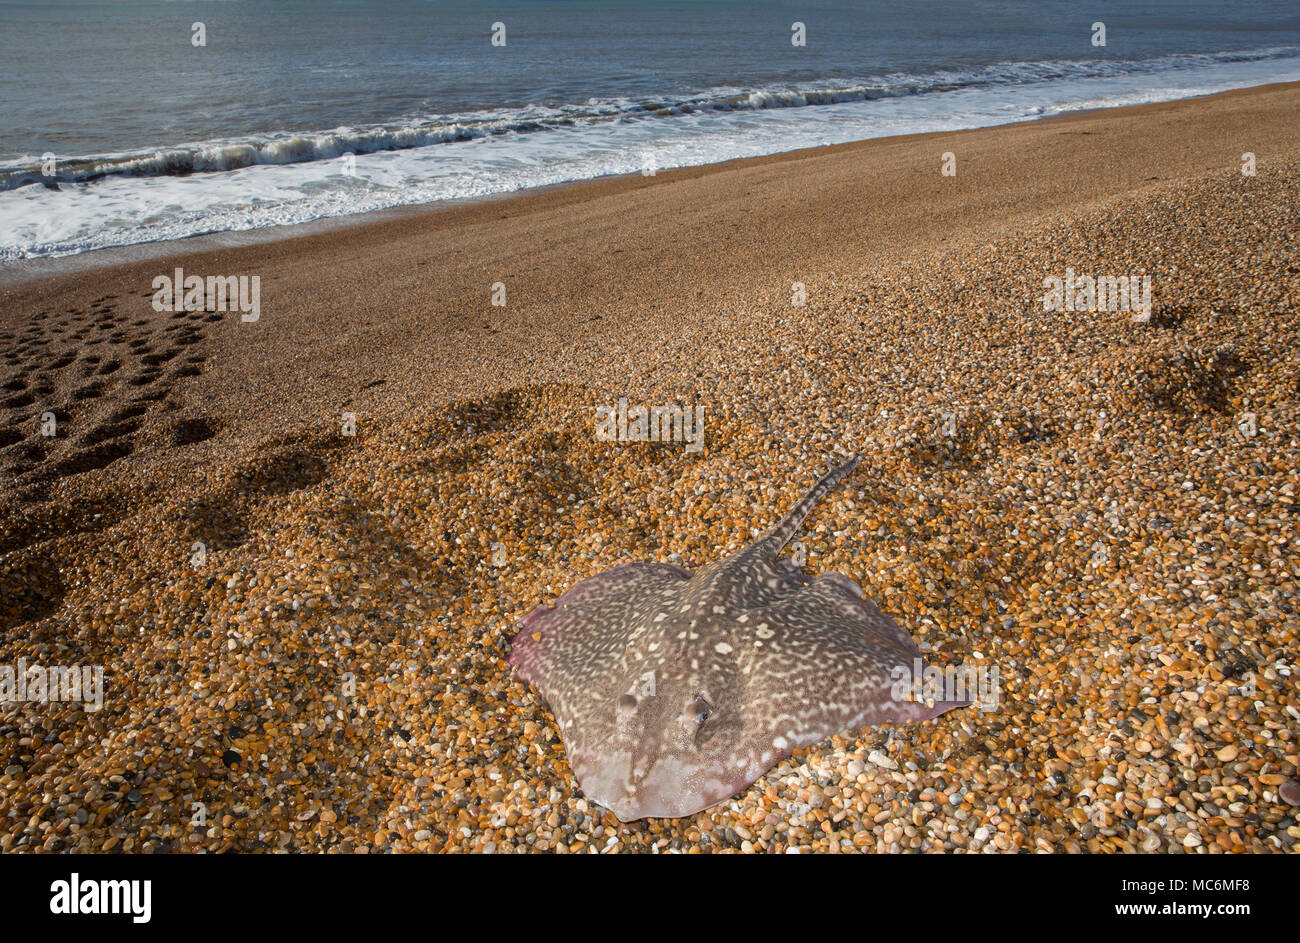 Un Thornback ray pris pêche côtière à partir de la plage de Chesil dans Dorset avant d'être relâchés vivants. Thornbacks avec d'autres espèces ray j Banque D'Images